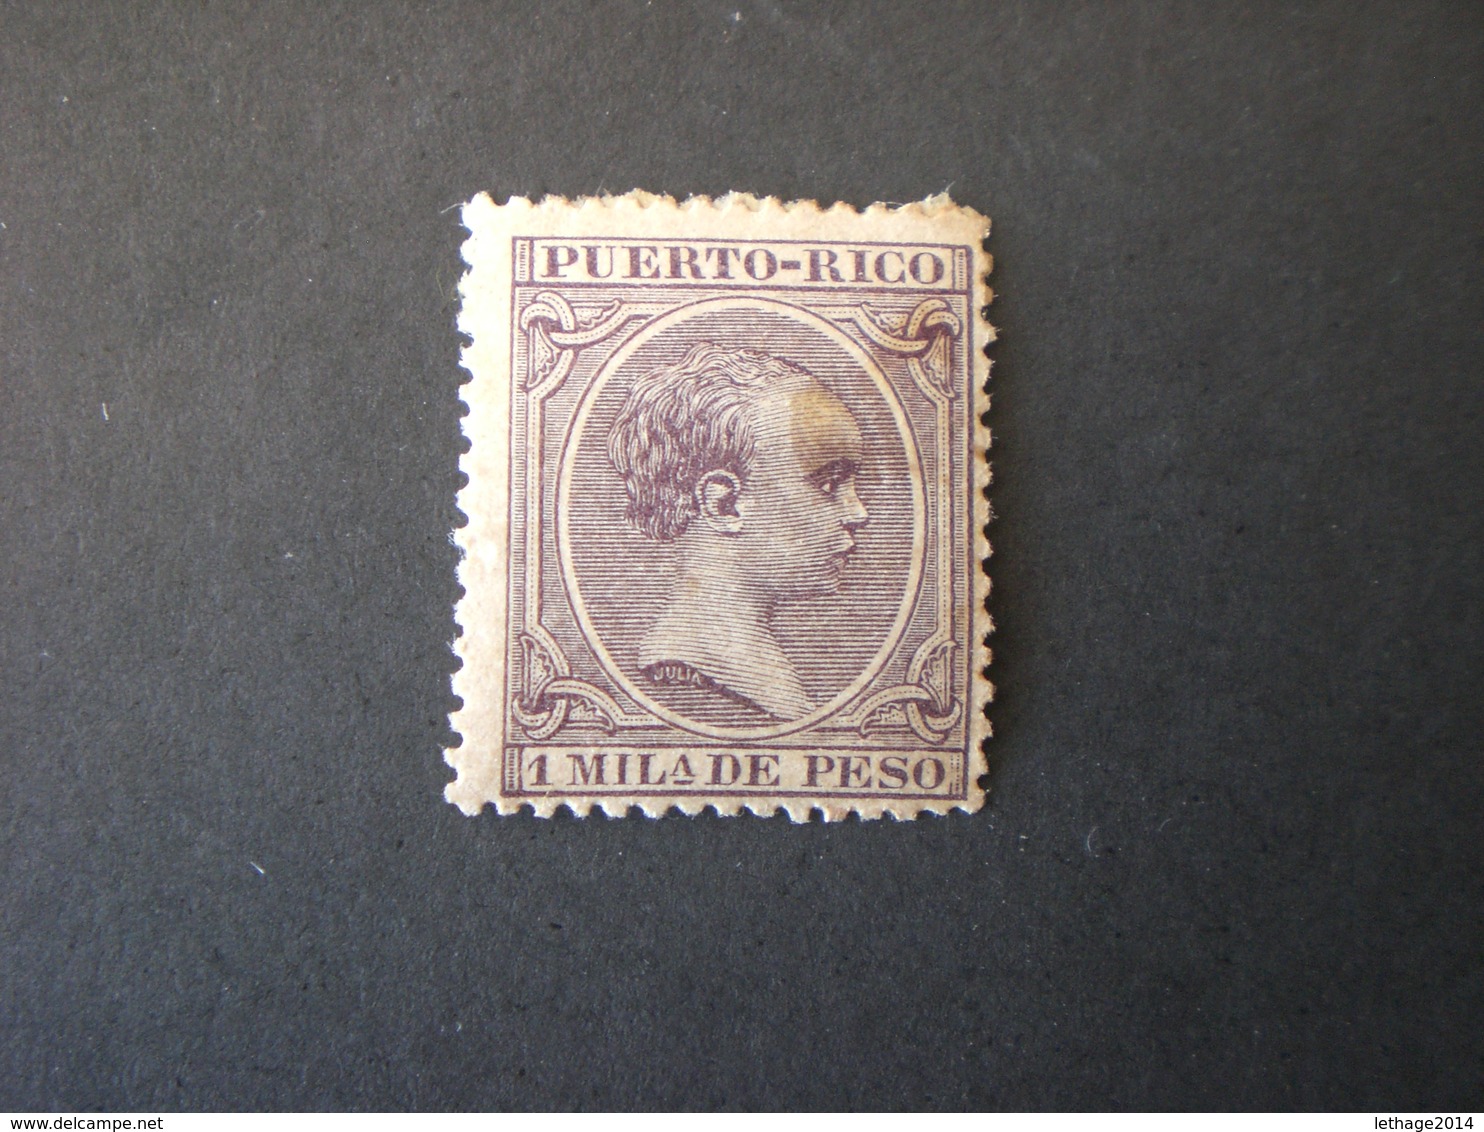 PORTO RICO PUERTO RICO 1891 King Alfonso XII Of Spain MHL - Puerto Rico